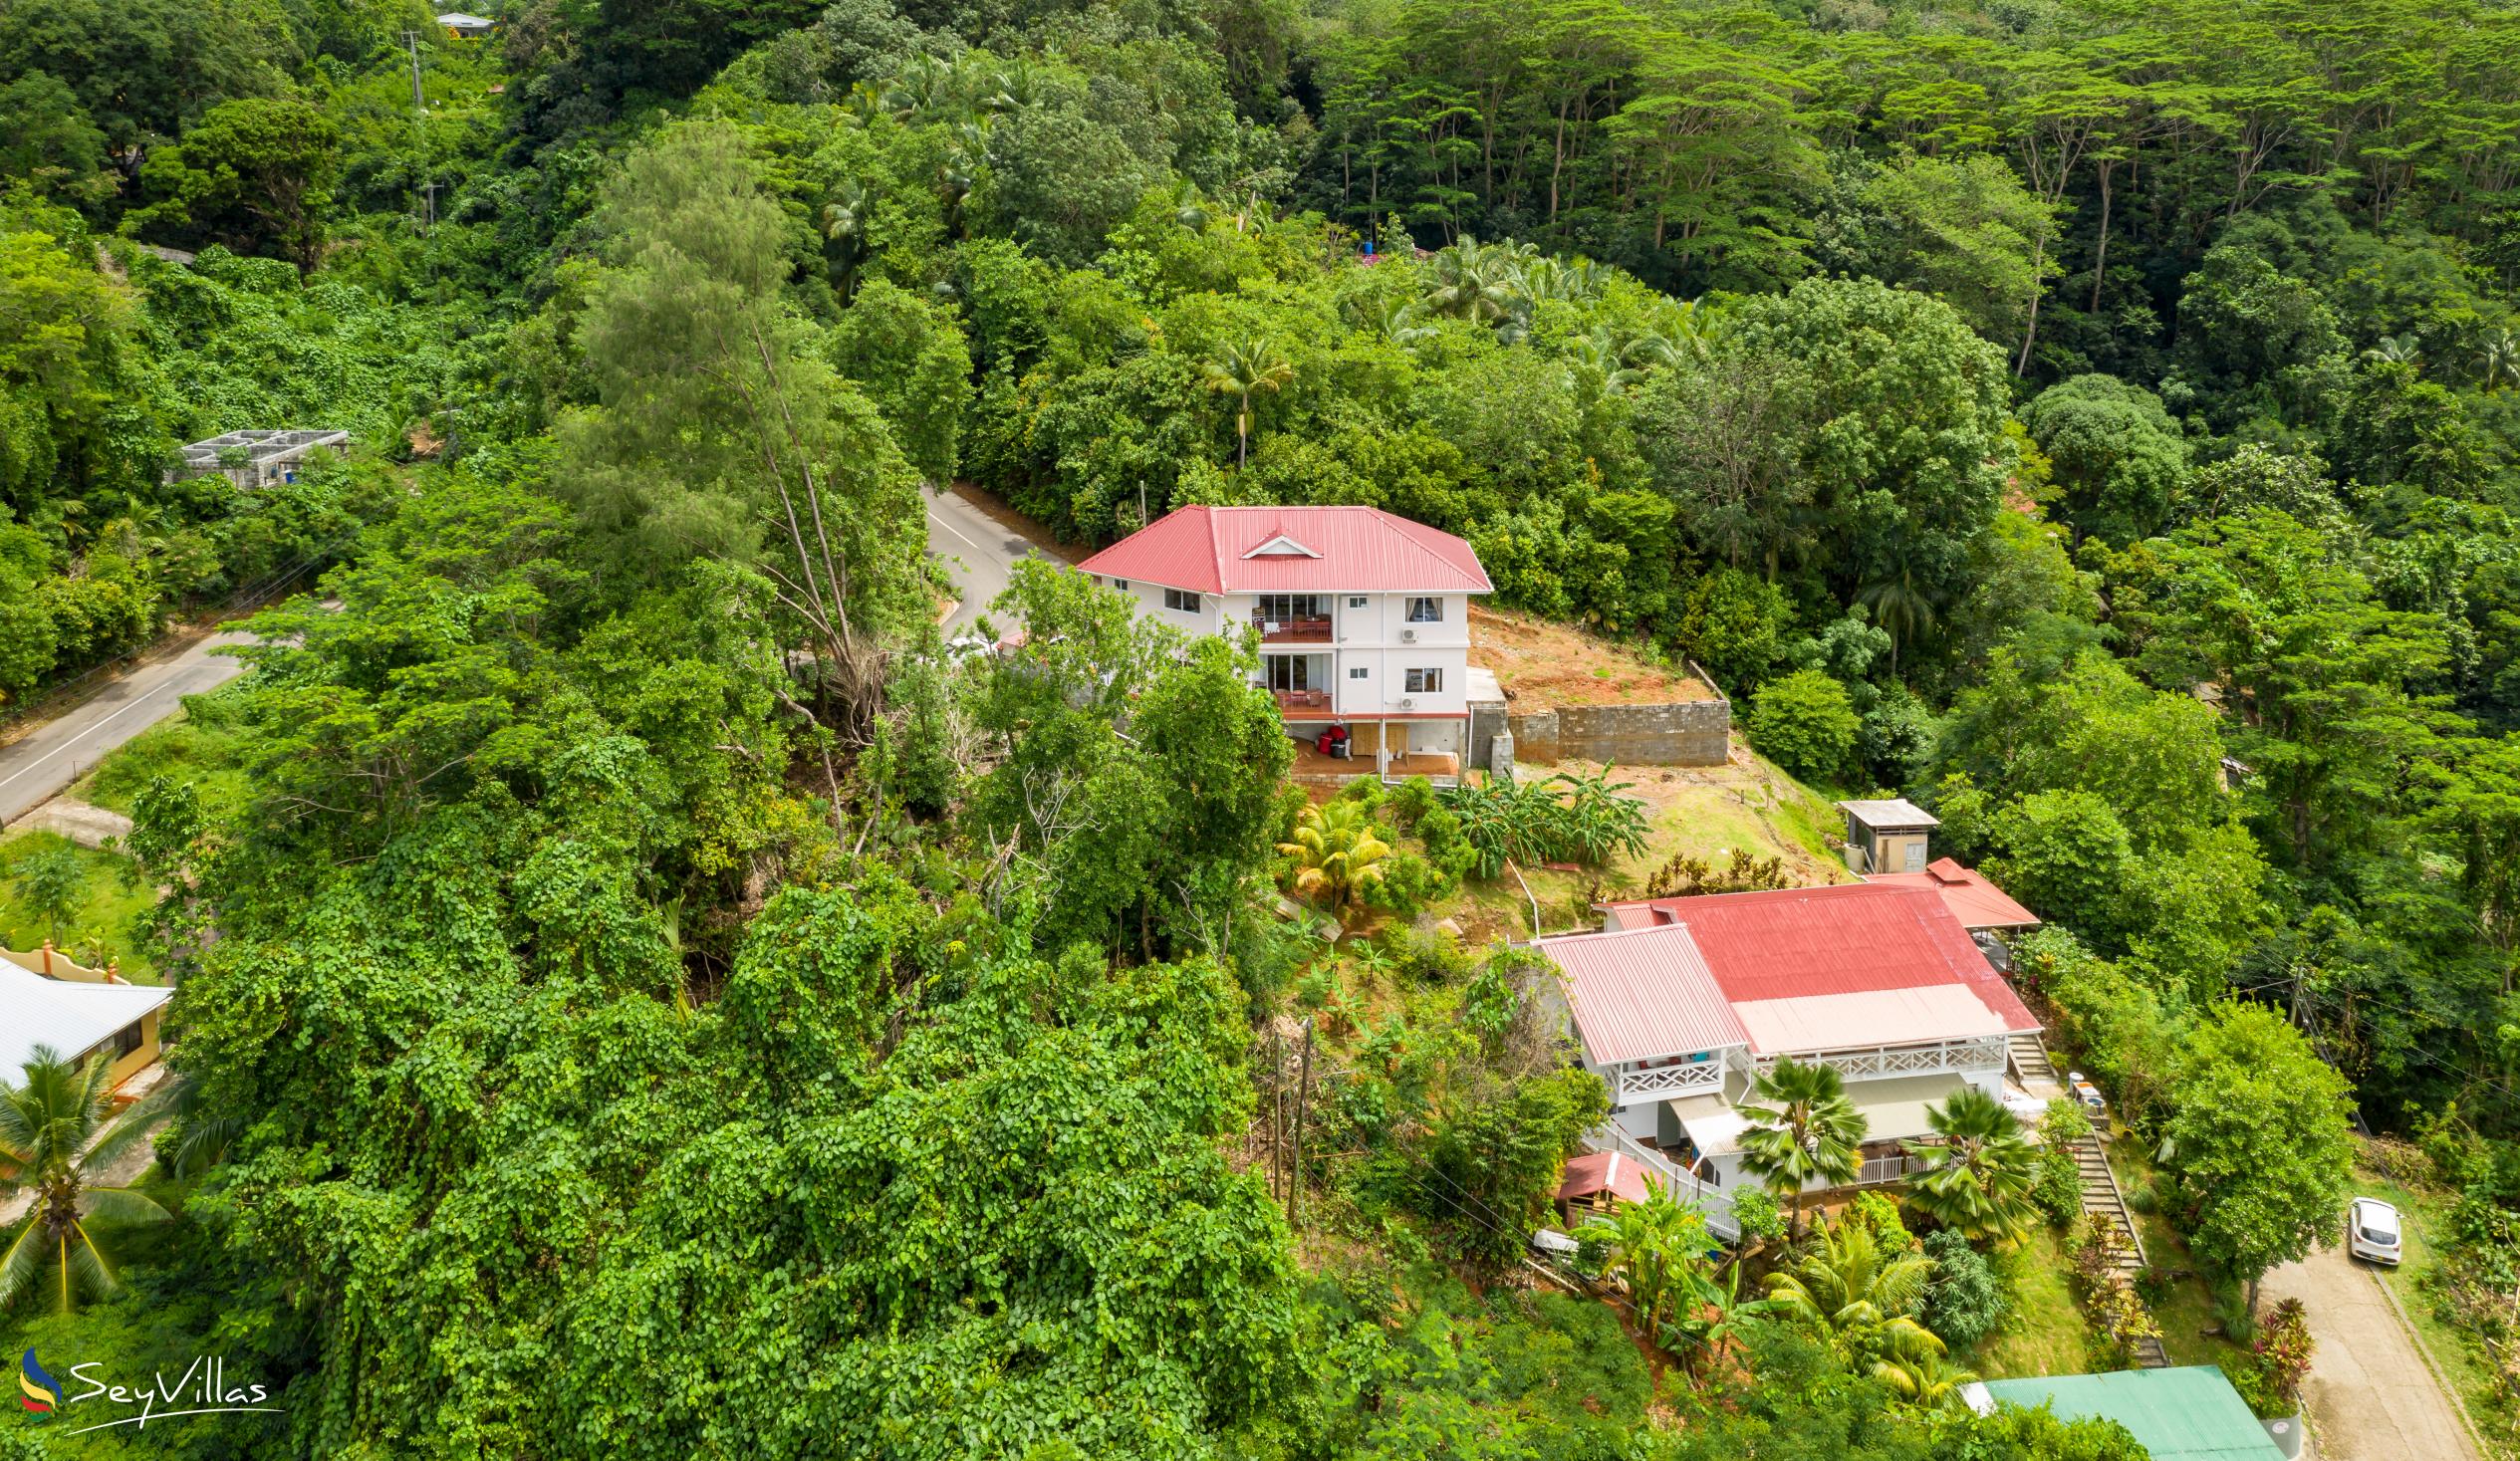 Foto 12: Cella Villa - Posizione - Mahé (Seychelles)